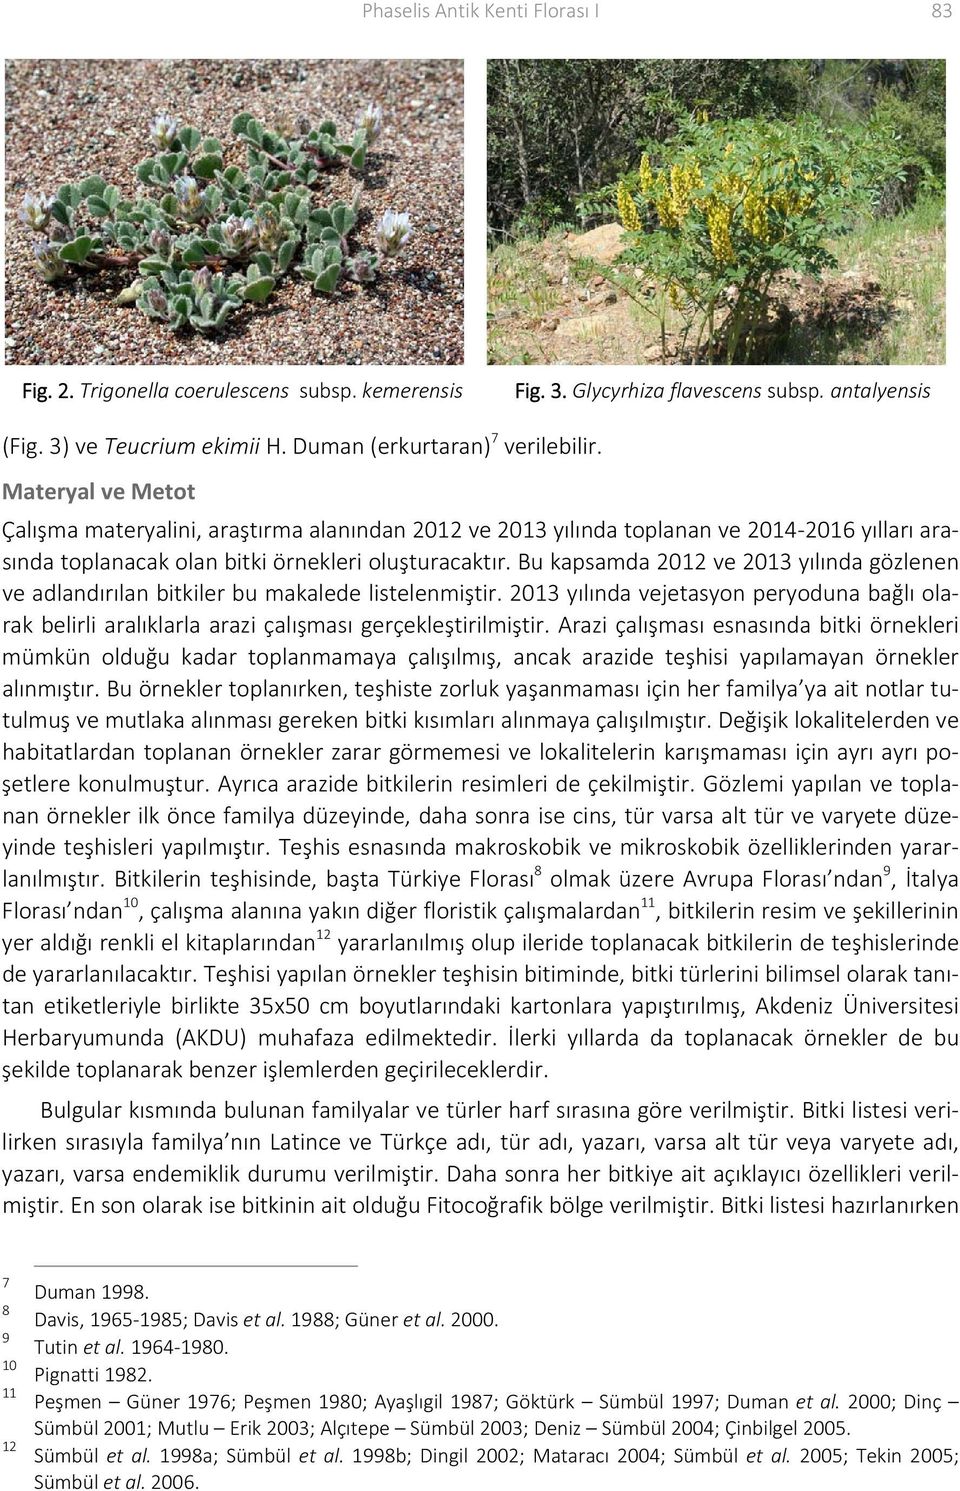 Bu kapsamda 2012 ve 2013 yılında gözlenen ve adlandırılan bitkiler bu makalede listelenmiştir. 2013 yılında vejetasyon peryoduna bağlı olarak belirli aralıklarla arazi çalışması gerçekleştirilmiştir.